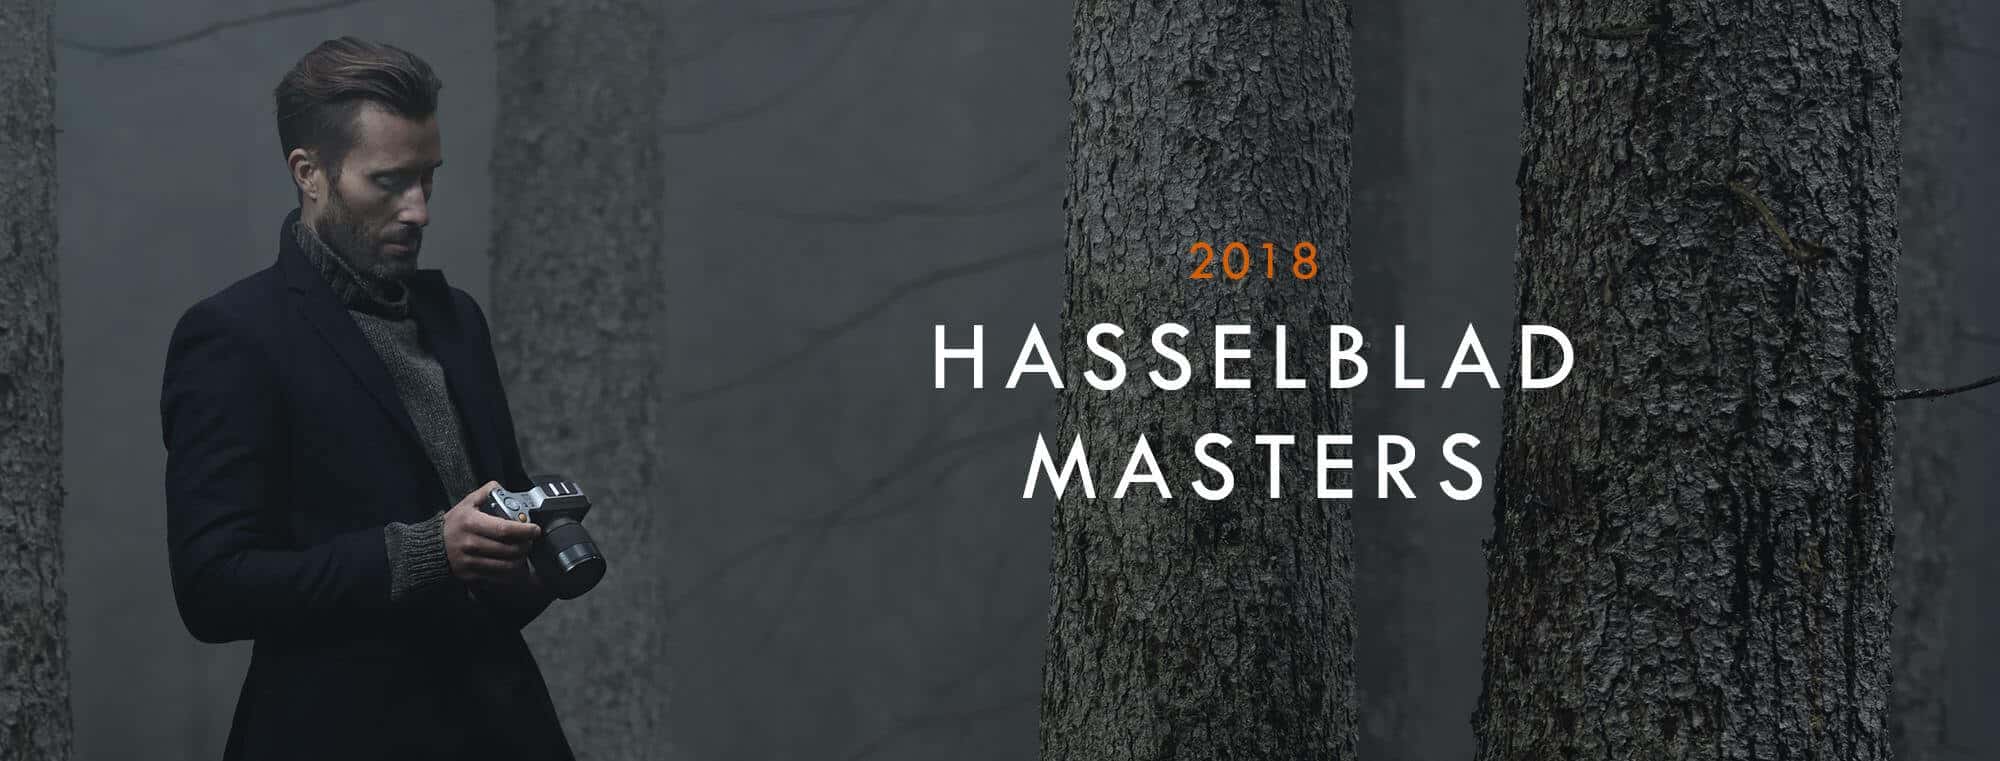 Pozrite si fotky finalistov Hasselblad Masters Awards, medzi nimi aj fotografka zo Slovenska - 16177470 1203880559666469 2902342899490772795 o - Pozrite si fotky finalistov Hasselblad Masters Awards, medzi nimi aj fotografka zo Slovenska